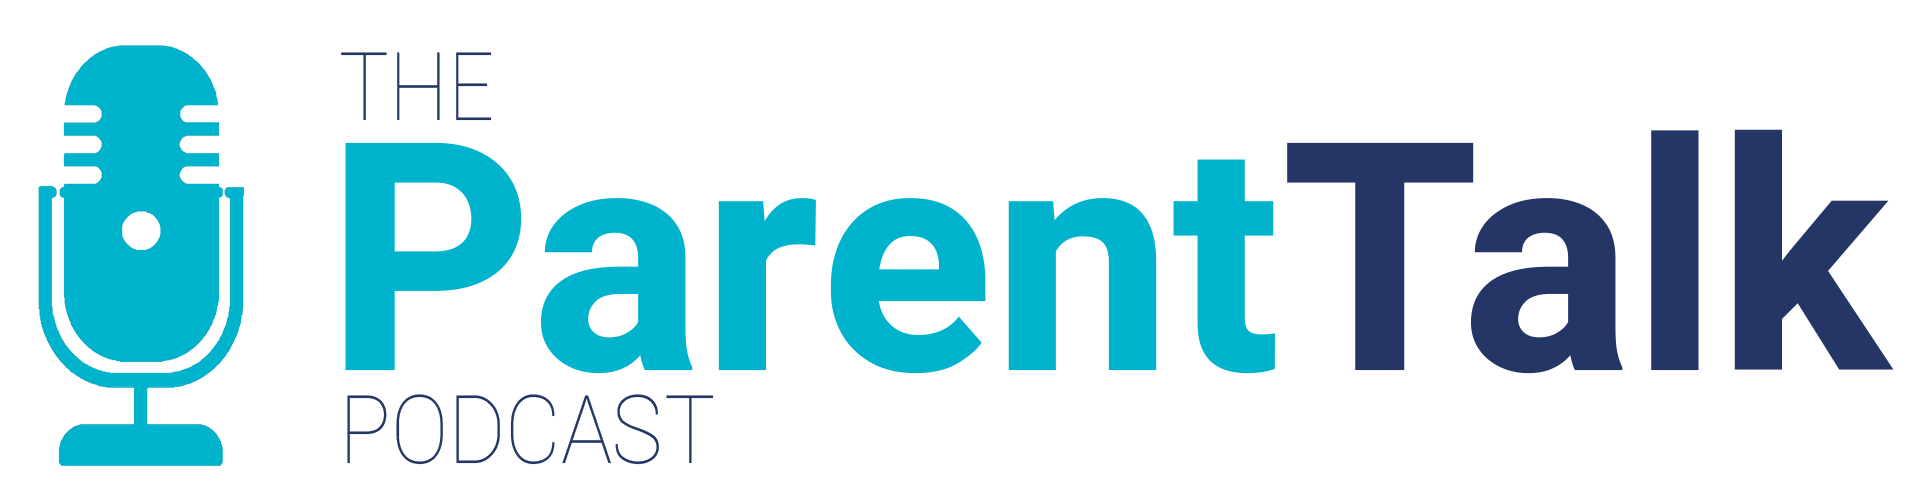 The ParentTalk Podcast Logo and Menu